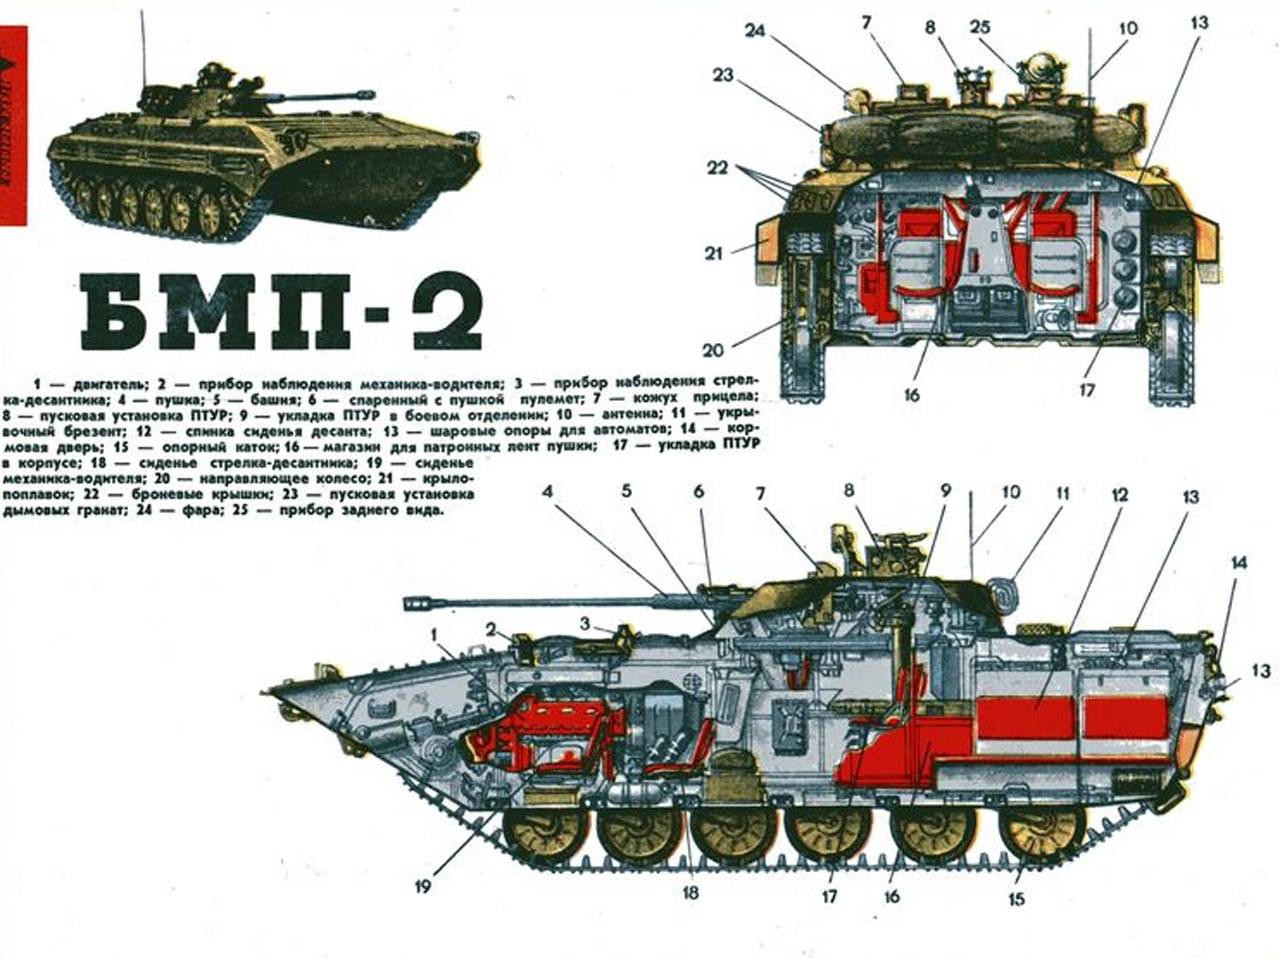 Боевая машина пехоты бмп-2, подробный обзор